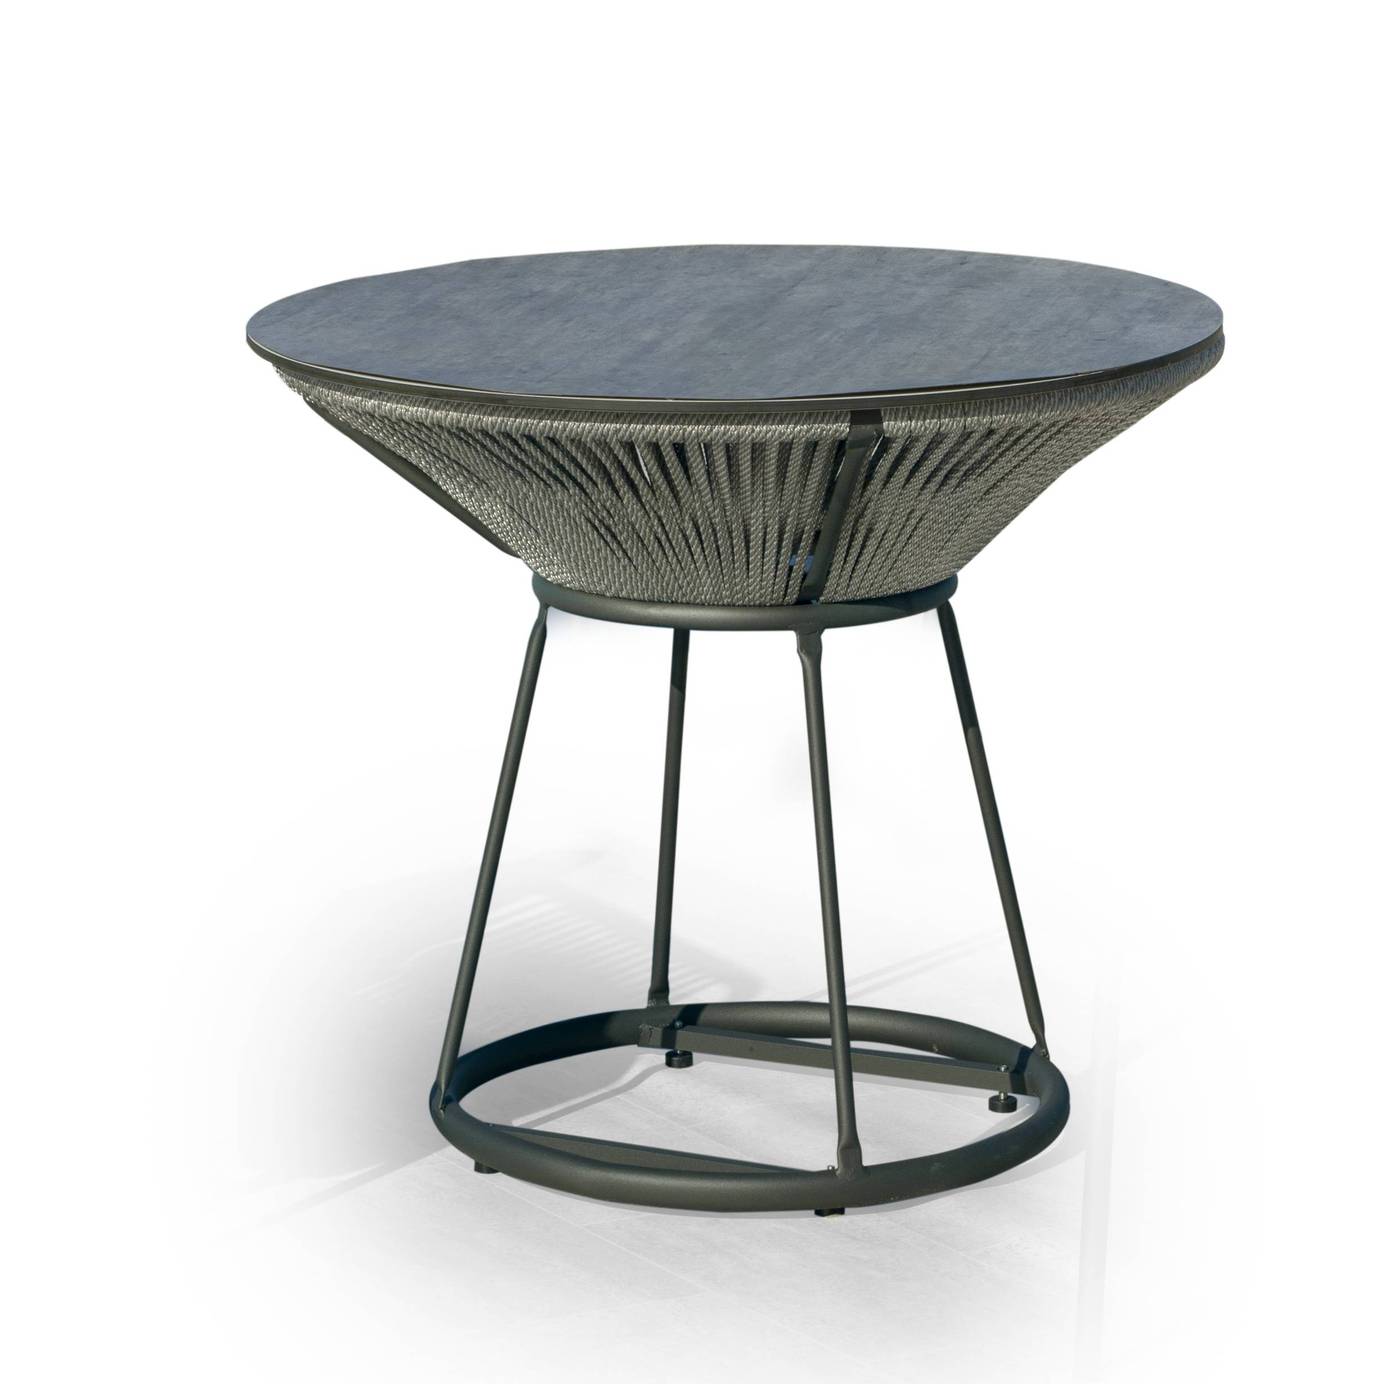 Mesa redonda de 90 cm, con tablero HPL ultra resistente. Estructura aluminio revestida de cuerda. Colores: blanco, gris, marrón o champagne.